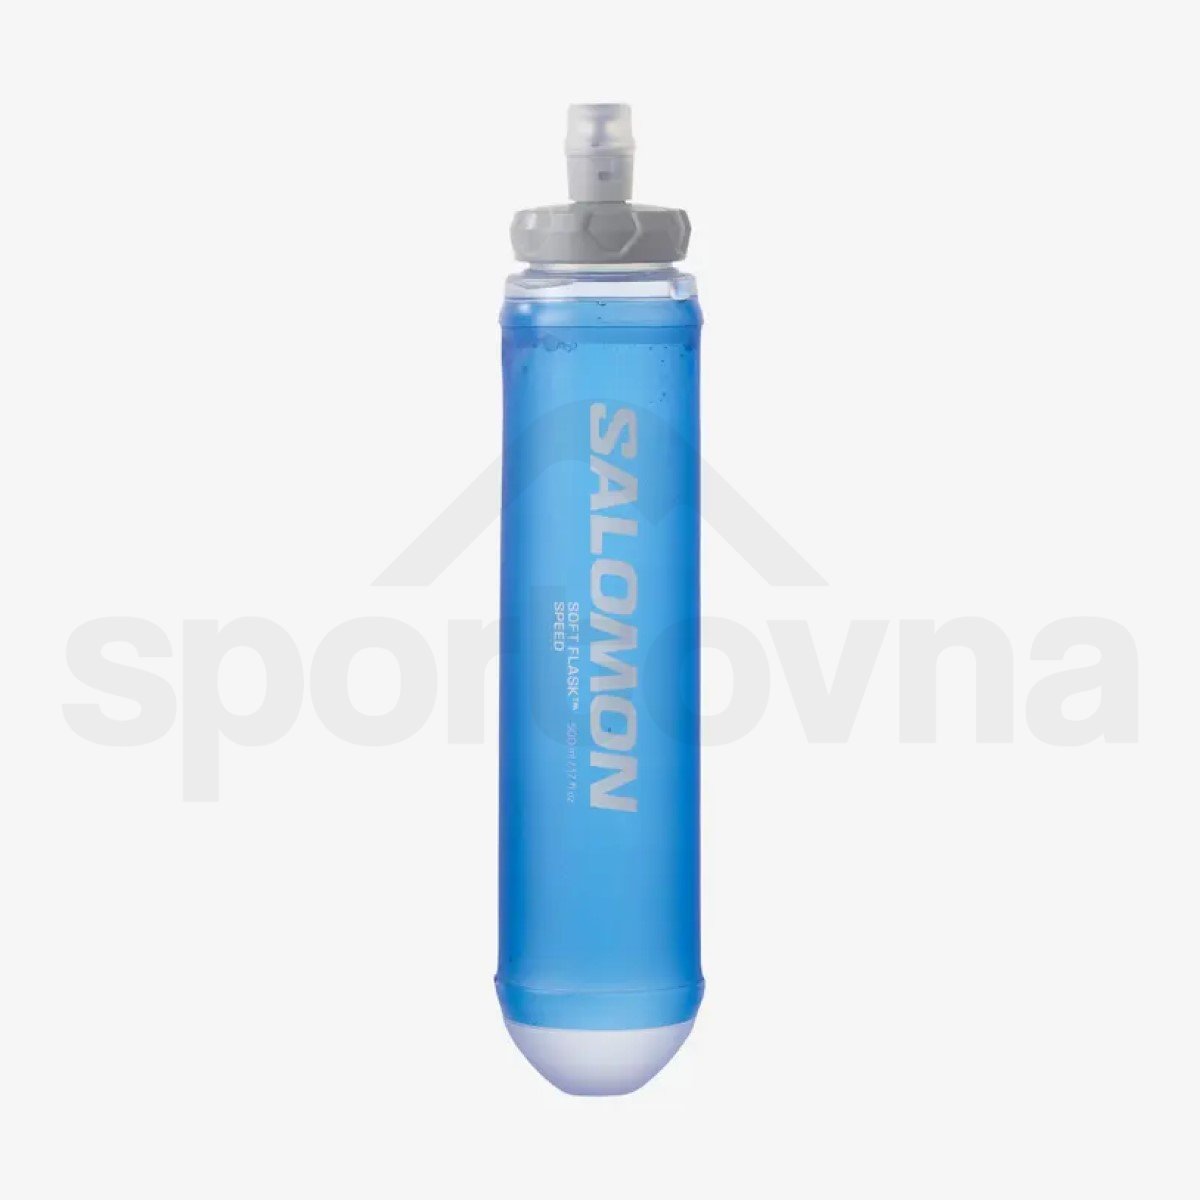 Batoh Salomon S/LAB SENSE ULTRA 5 with flasks 2020 - červená